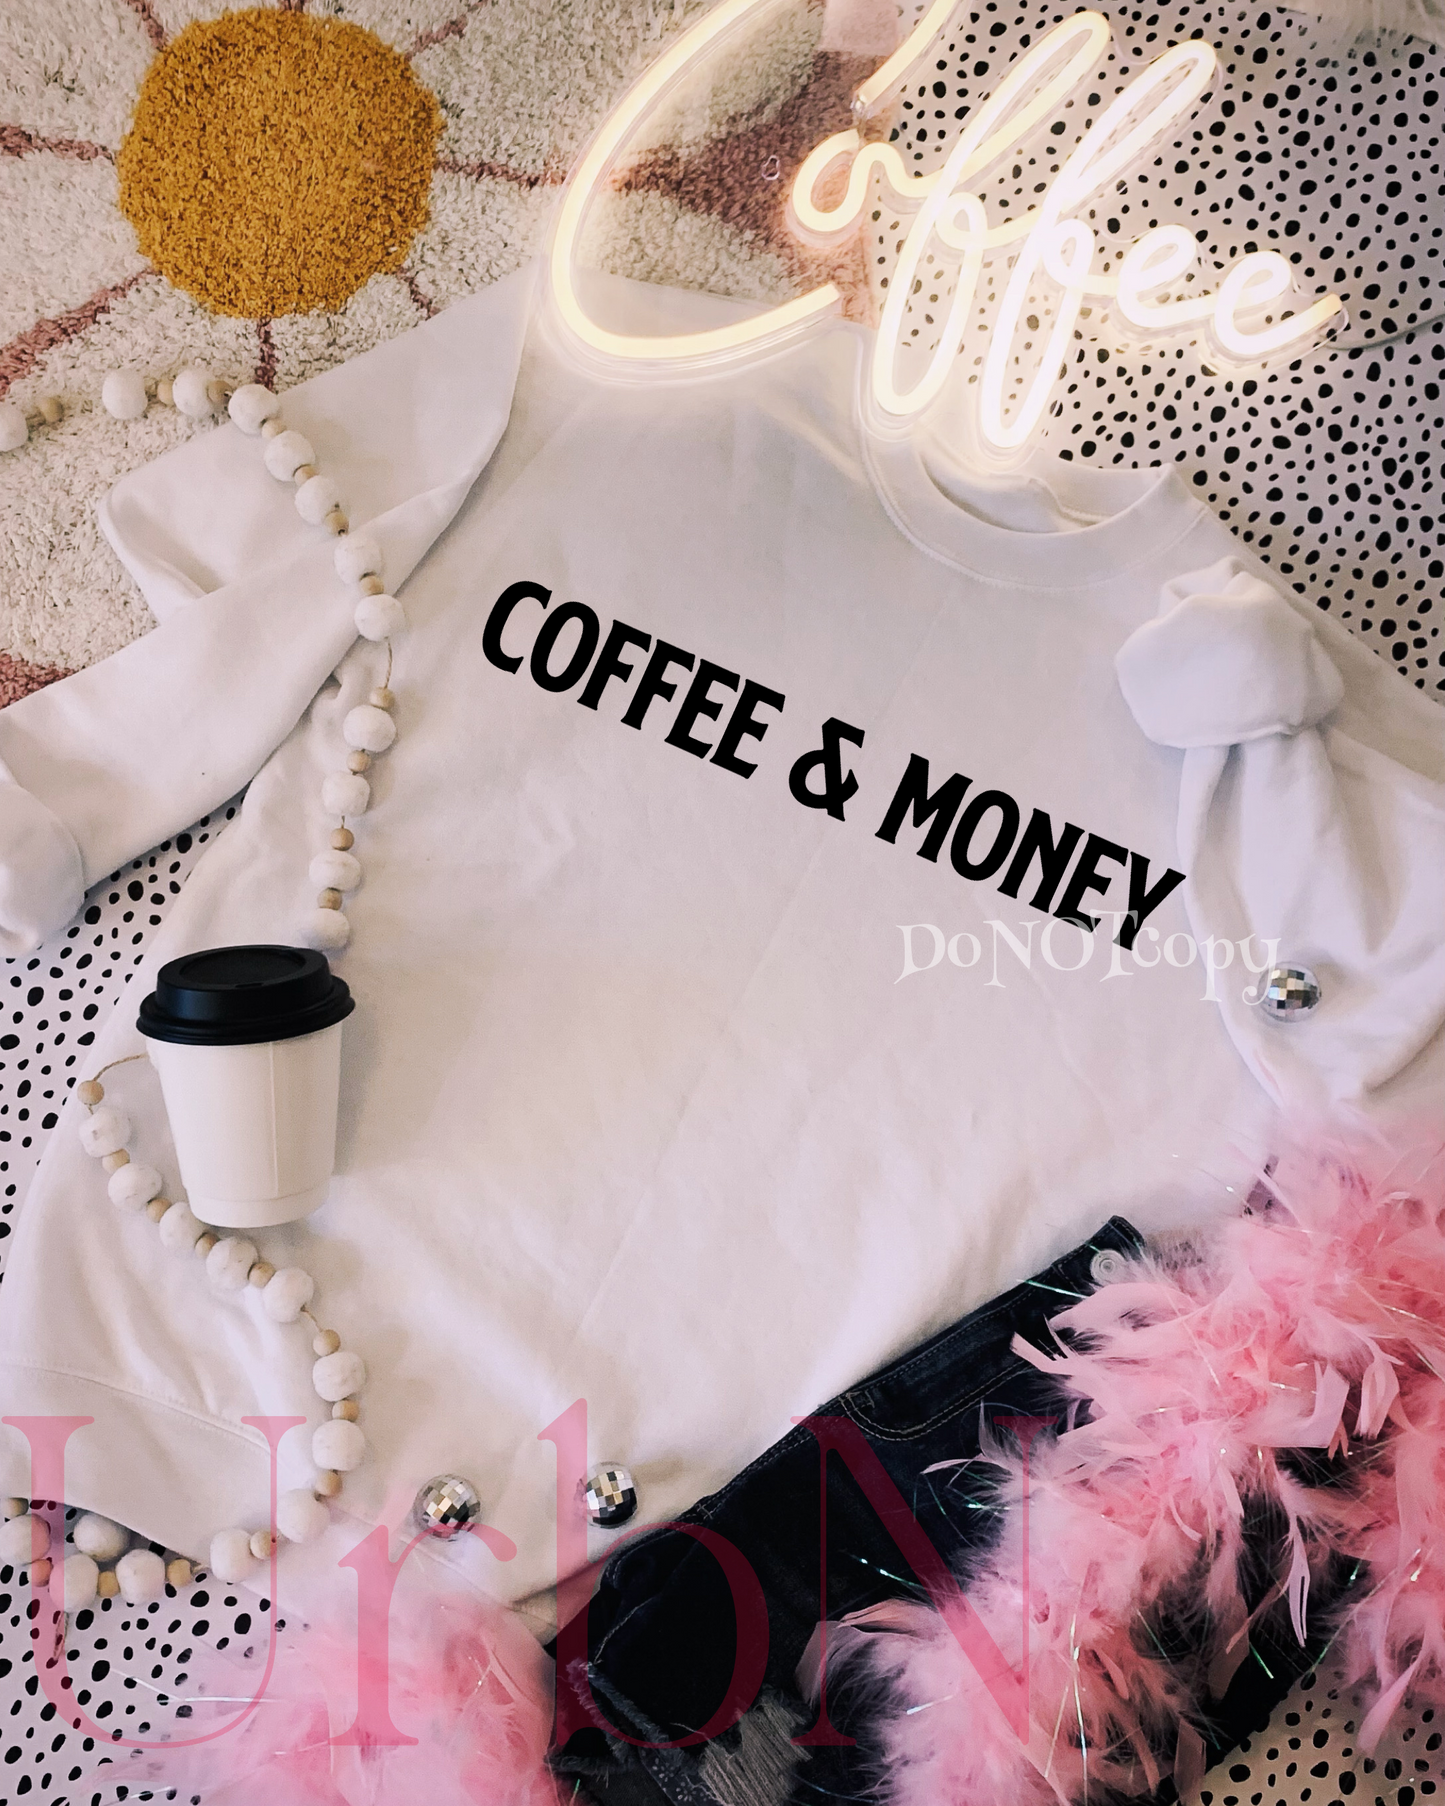 Coffee & money